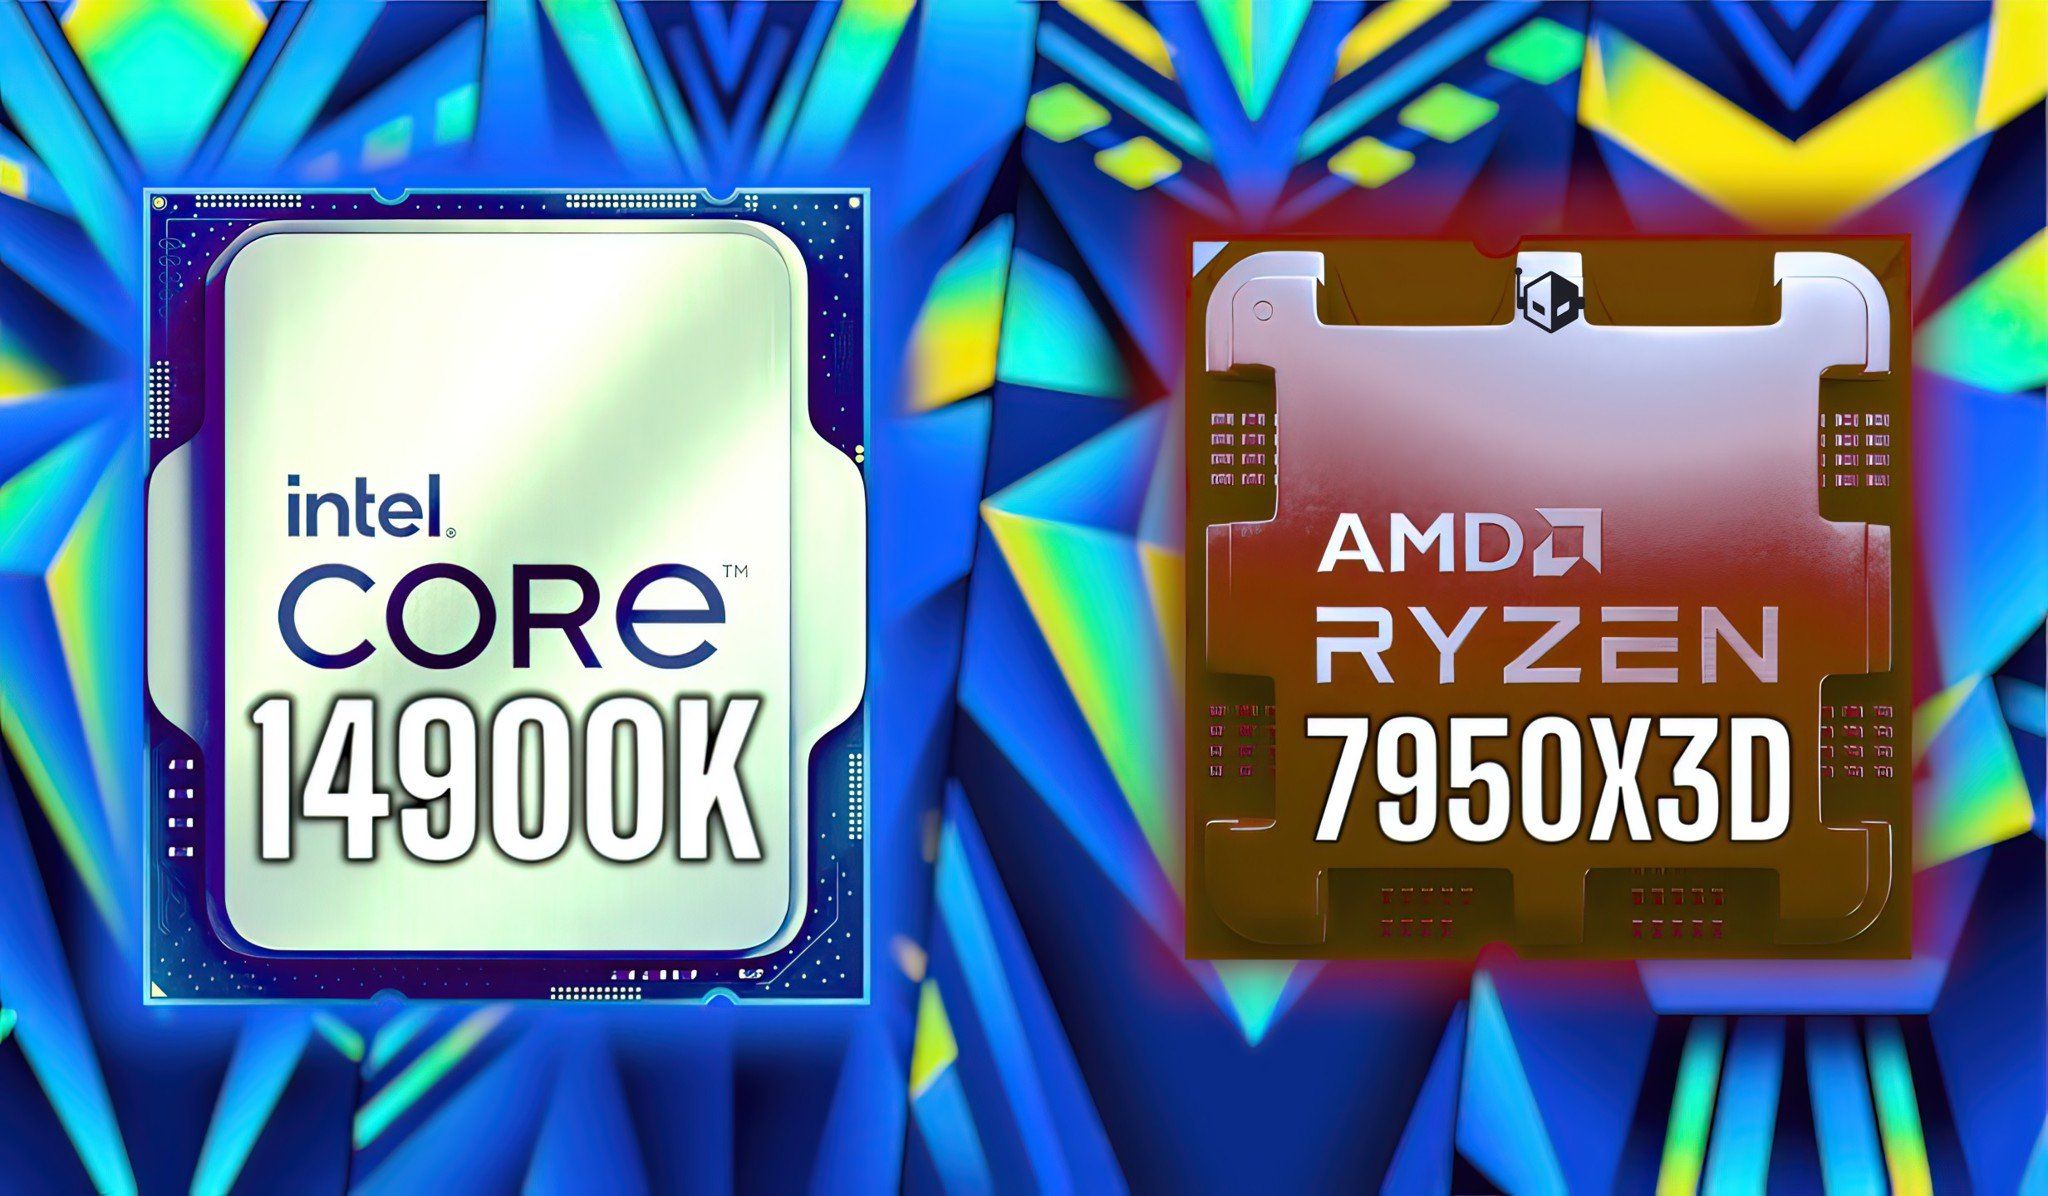 Lộ slide Intel cho thấy Core i9-14900K chiến game ngon hơn Ryzen 9 7950X3D lên đến 23%